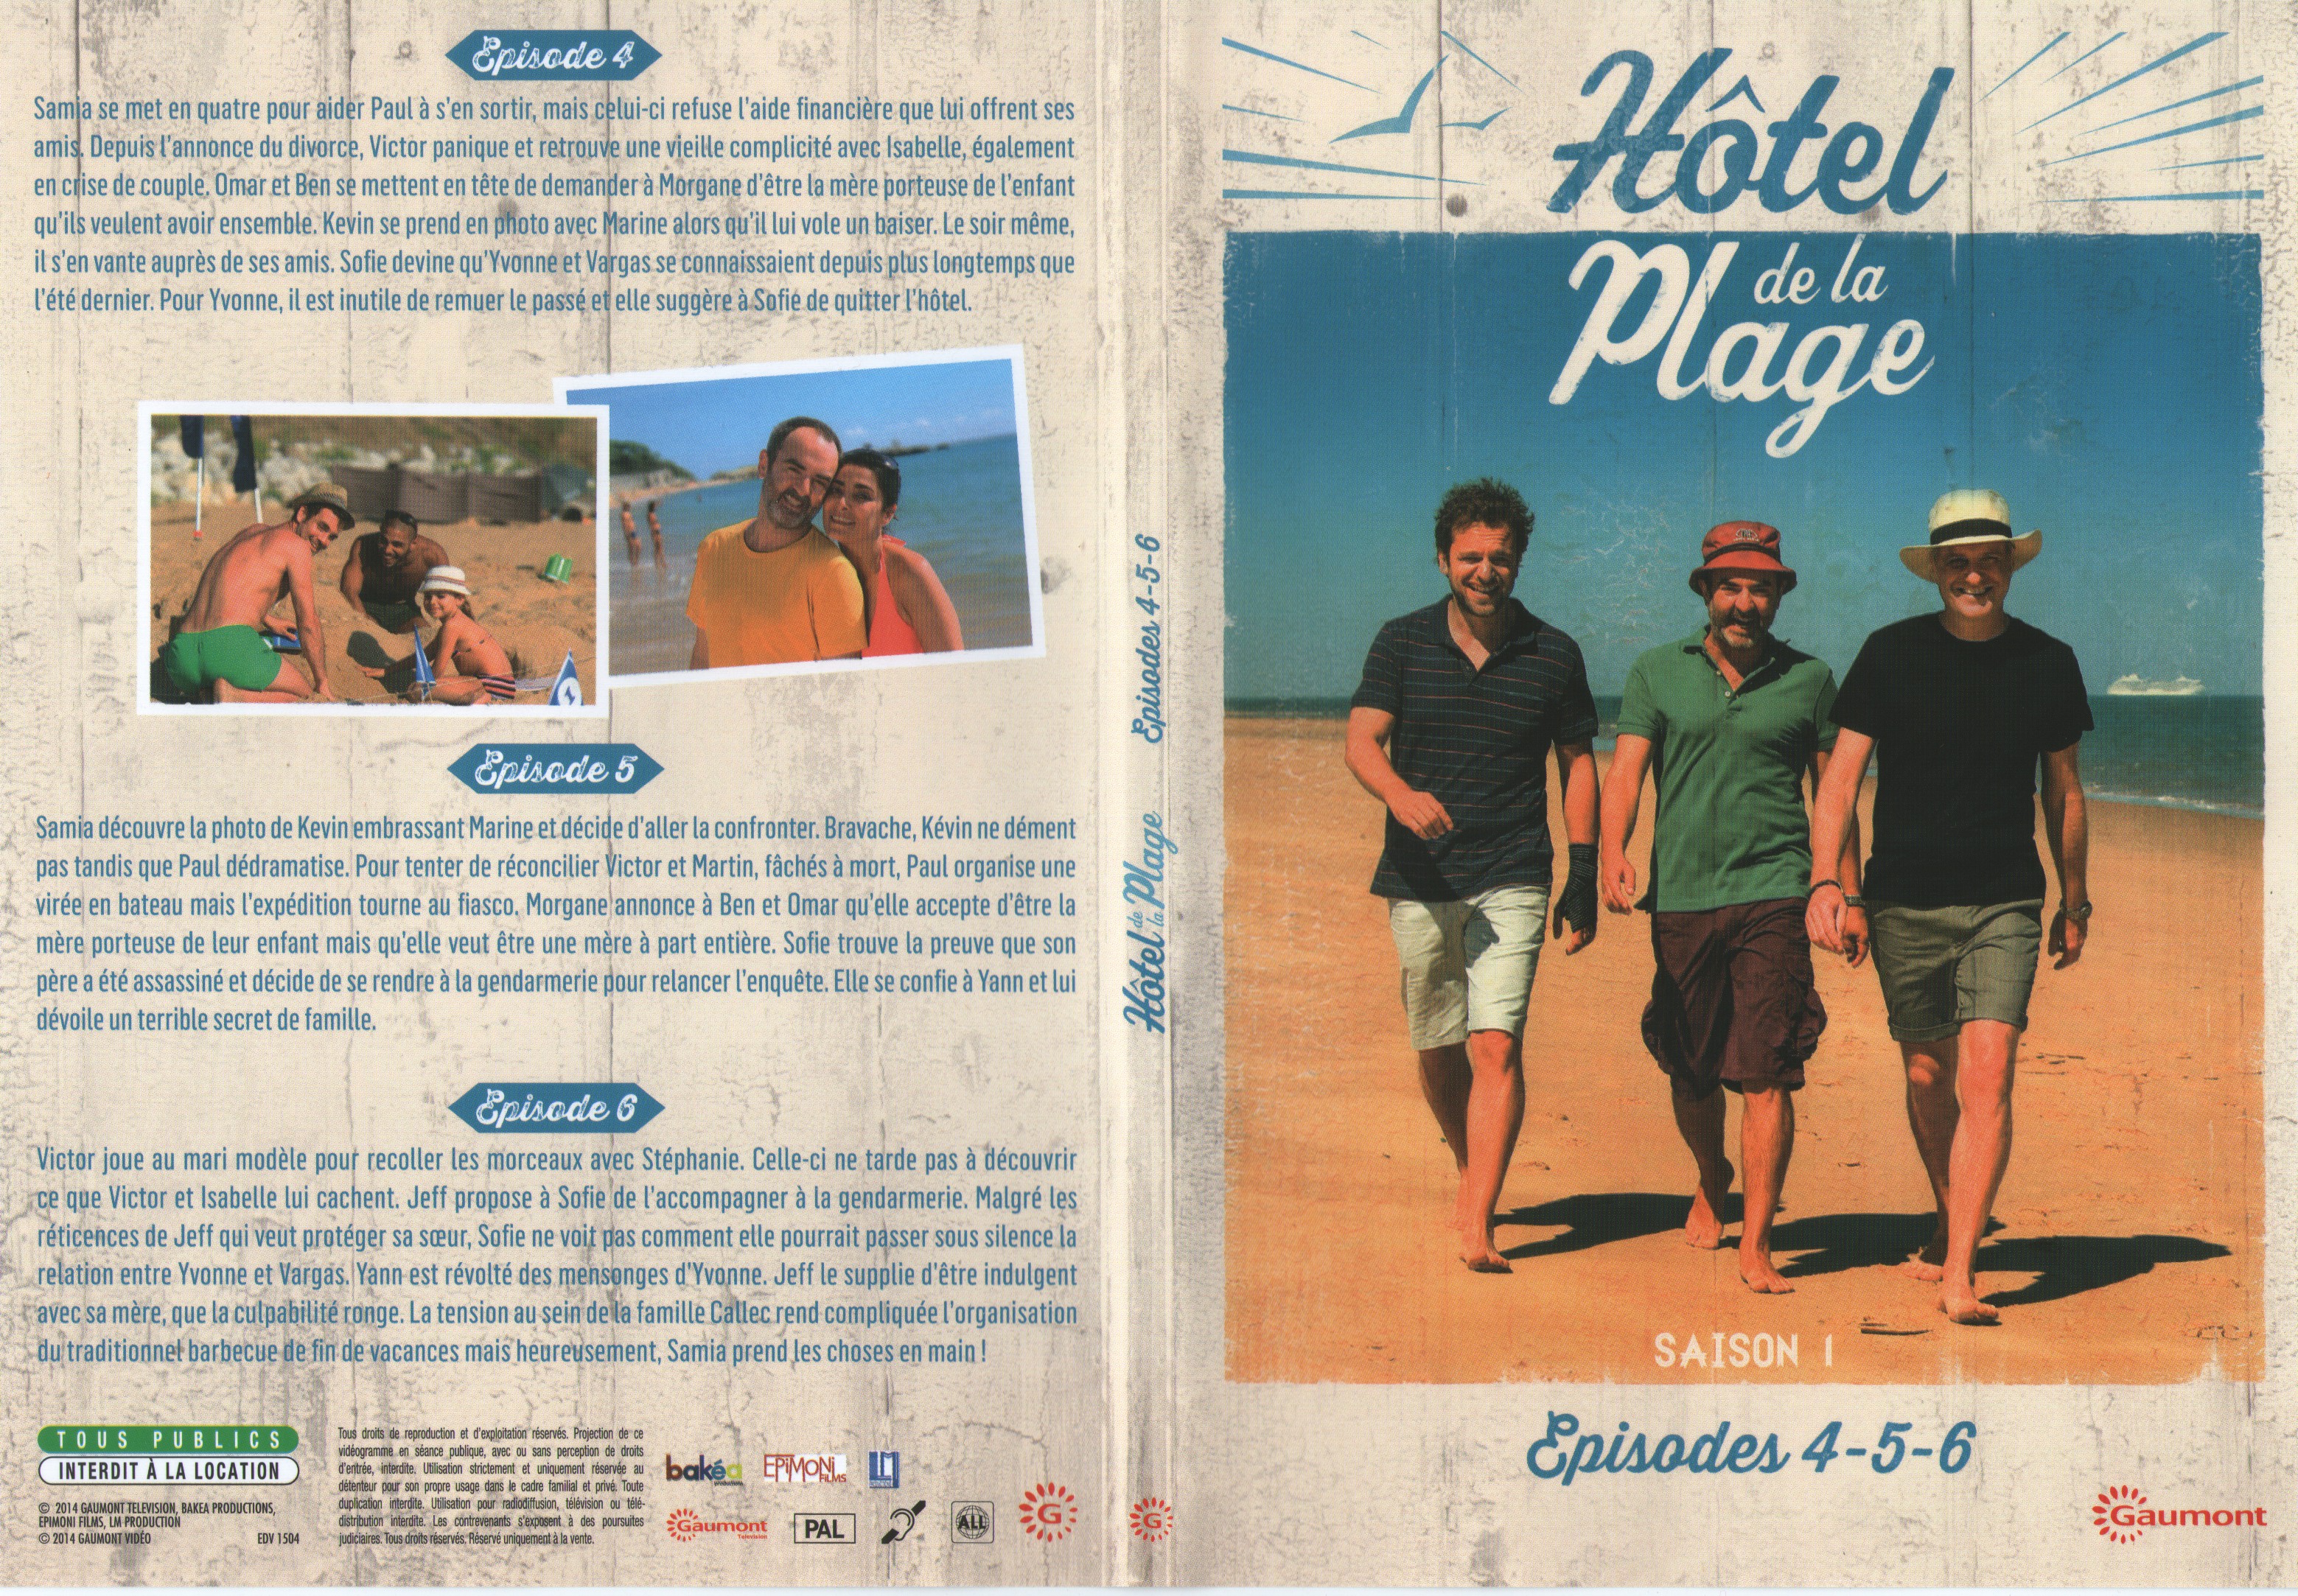 Jaquette DVD Hotel de la plage Saison 1 DVD 2